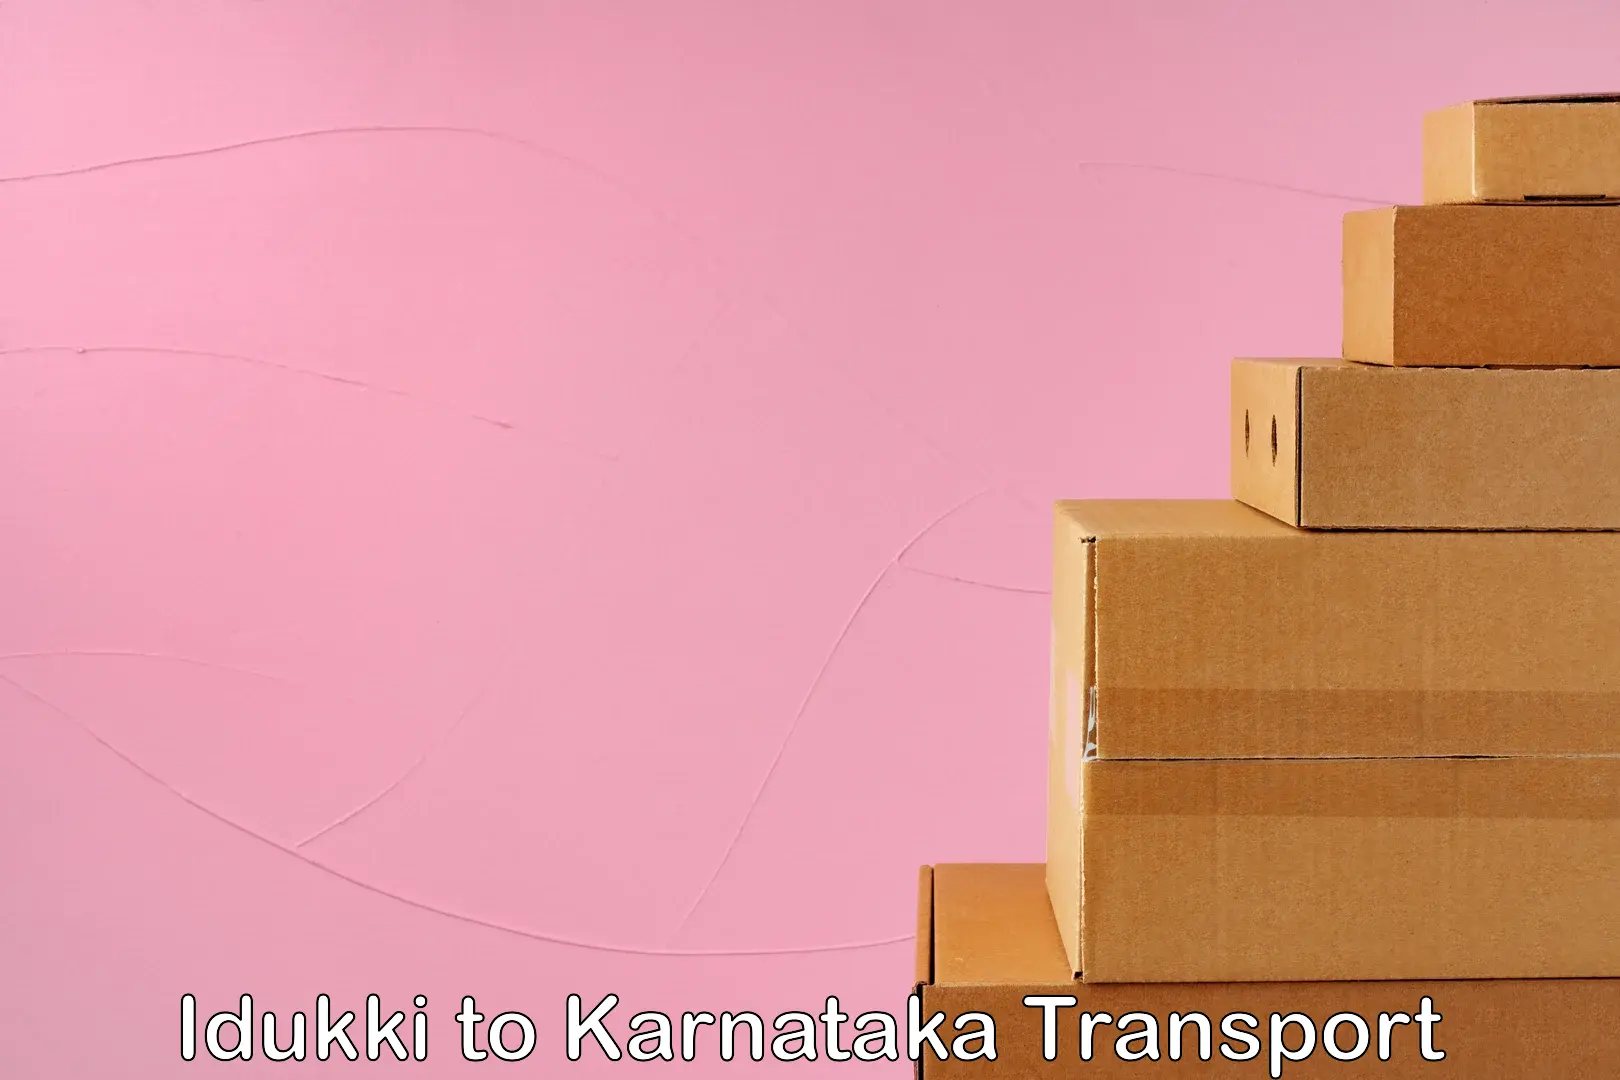 Furniture transport service in Idukki to Karnataka